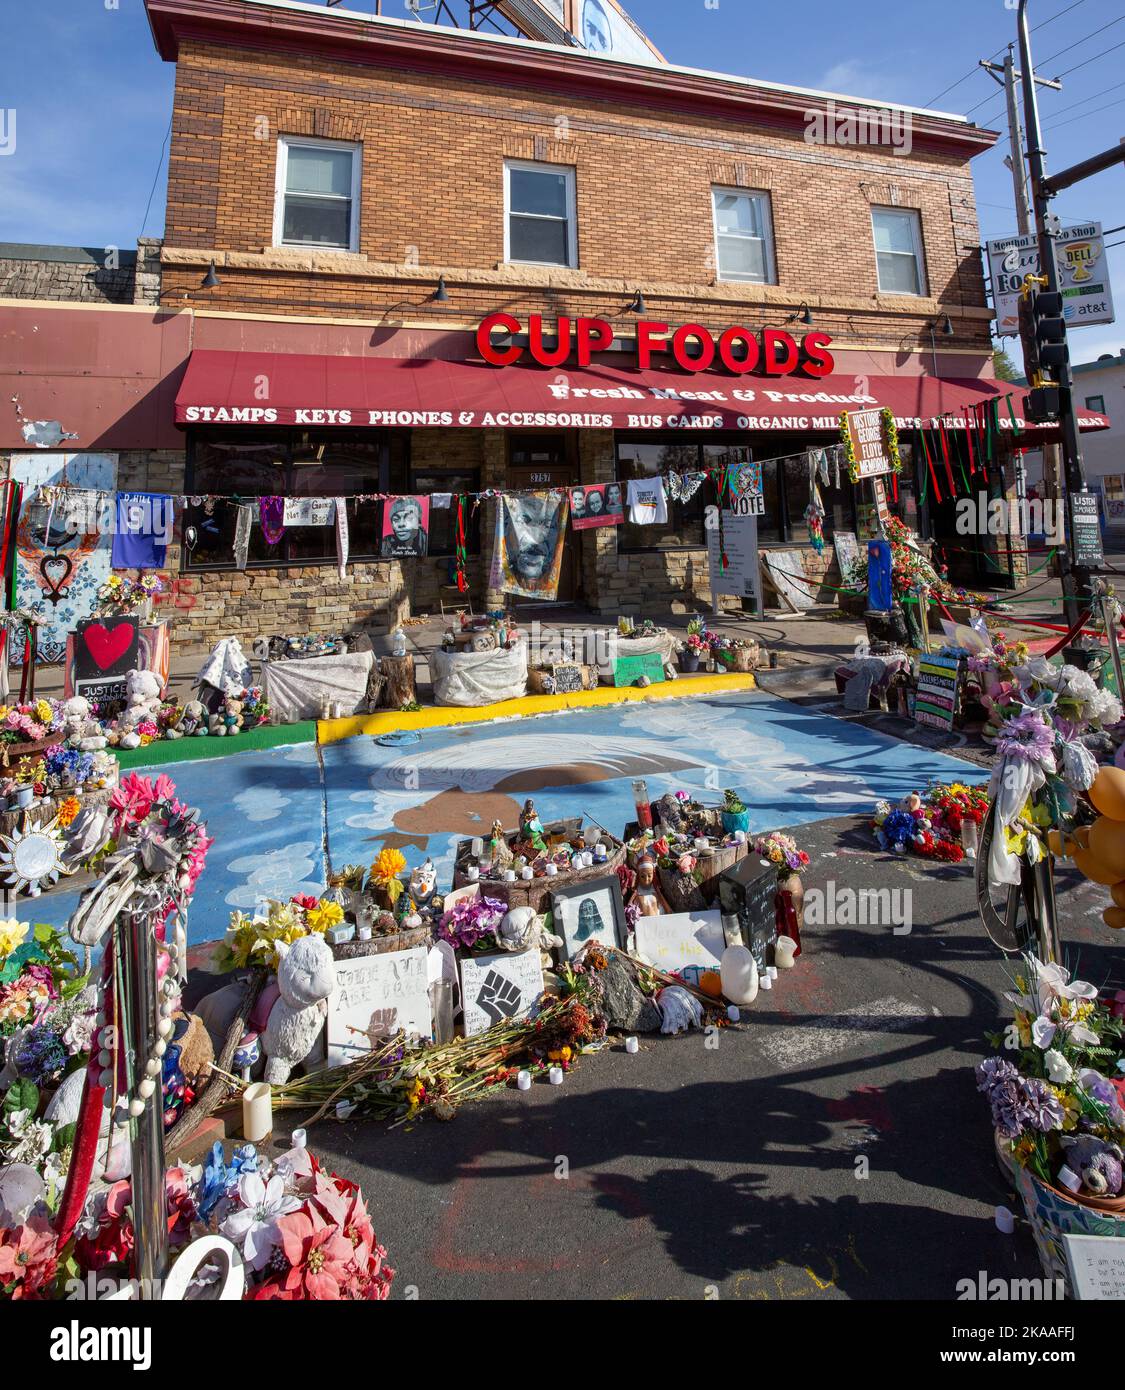 Monuments commémoratifs et hommages à l'extérieur de Cup Foods, le site de l'assassinat de George Floyd en 2020 par un policier dans le sud de Minneapolis, au Minnesota. Banque D'Images